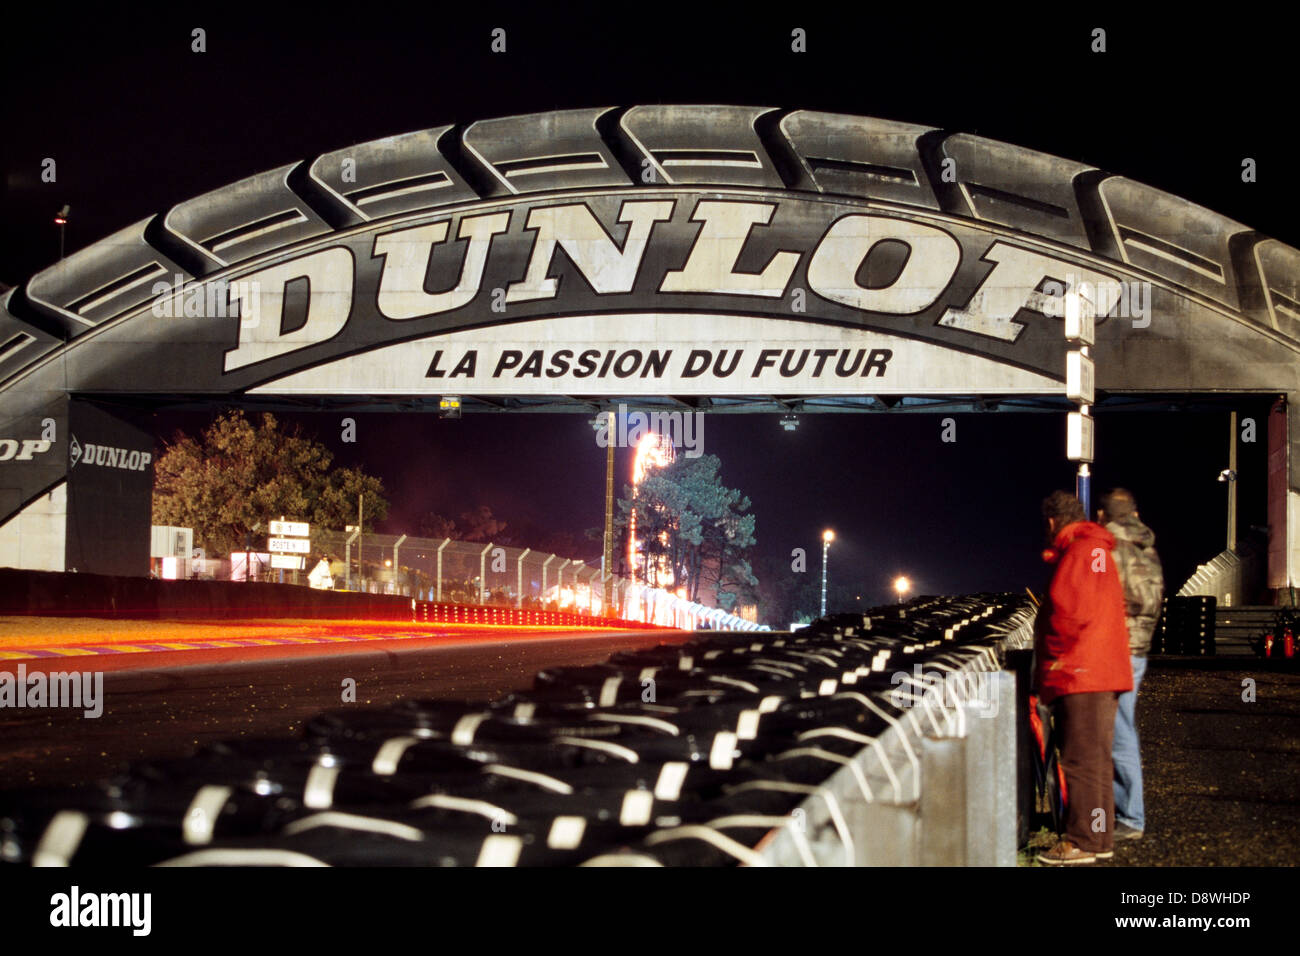 Coches crear rayas de luz a medida que pasan bajo el puente Dunlop en la noche durante la carrera de resistencia de 24 horas de Le Mans en 2001 Foto de stock